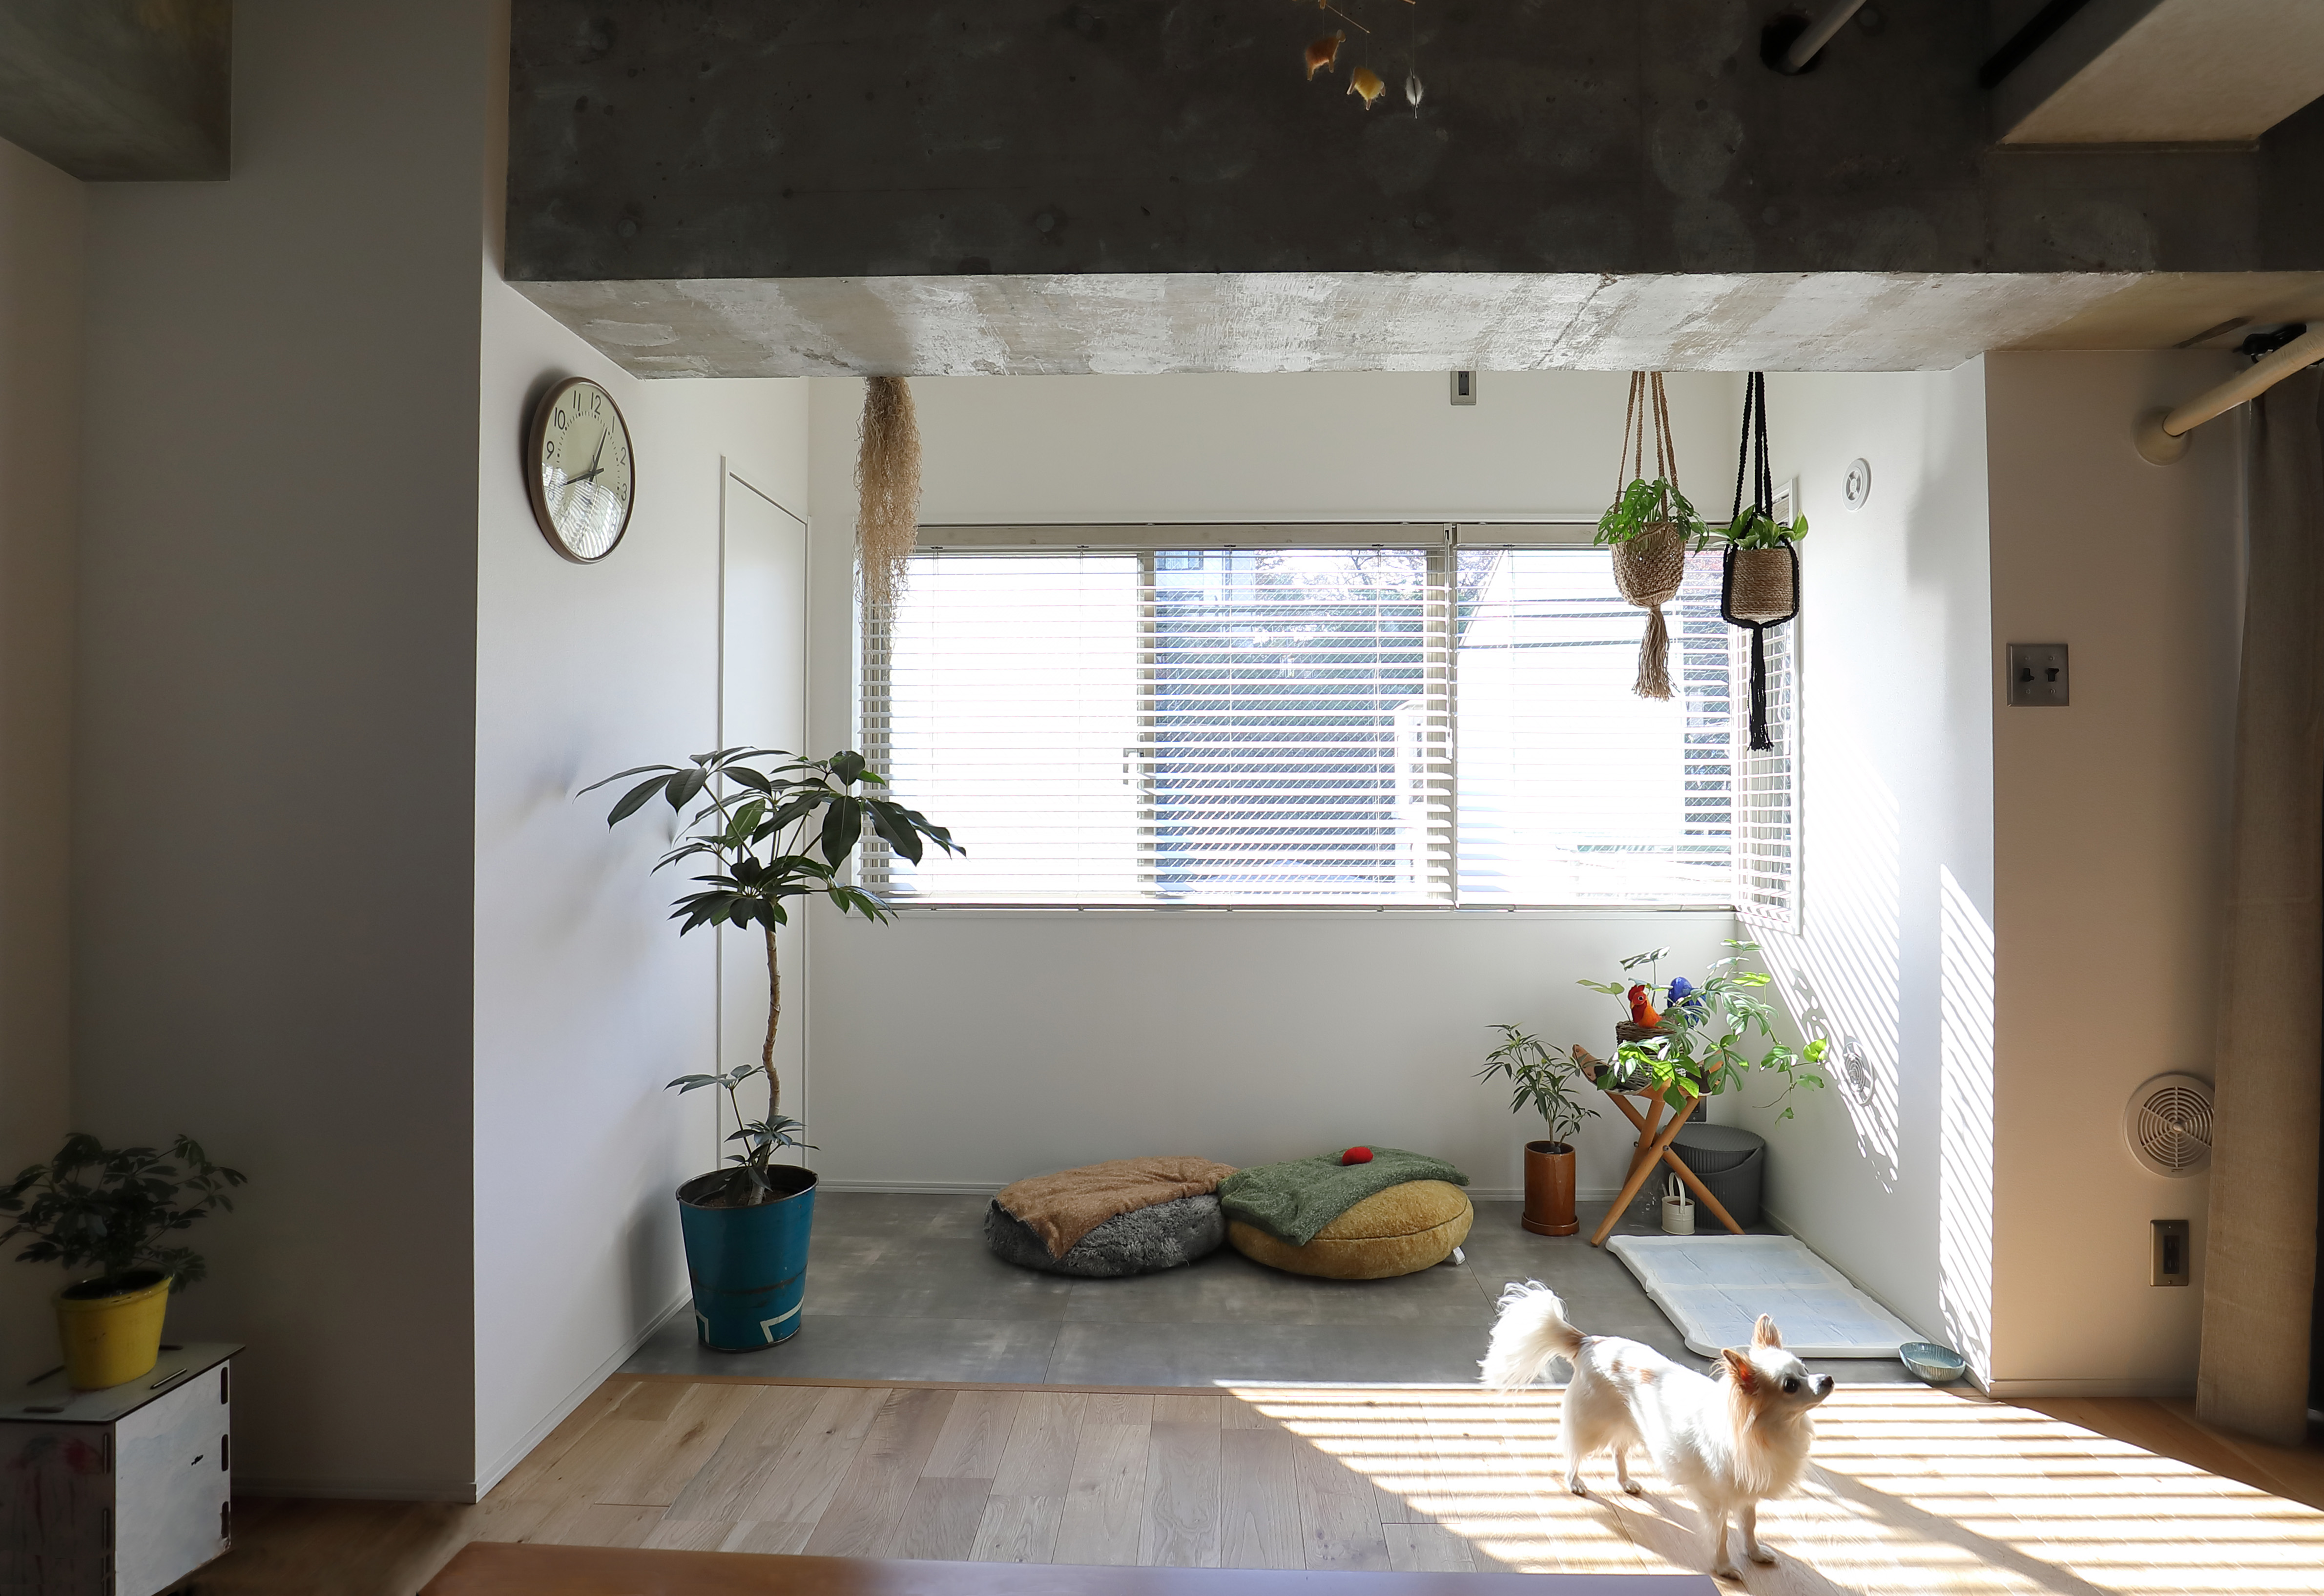 ほどよく無機質でハイセンスなお部屋づくり 東京のおしゃれマンションリノベ実例 リノベーションのshuken Re マンション 住宅 中古物件をリフォームやリノベで住みやすくデザインし施工します